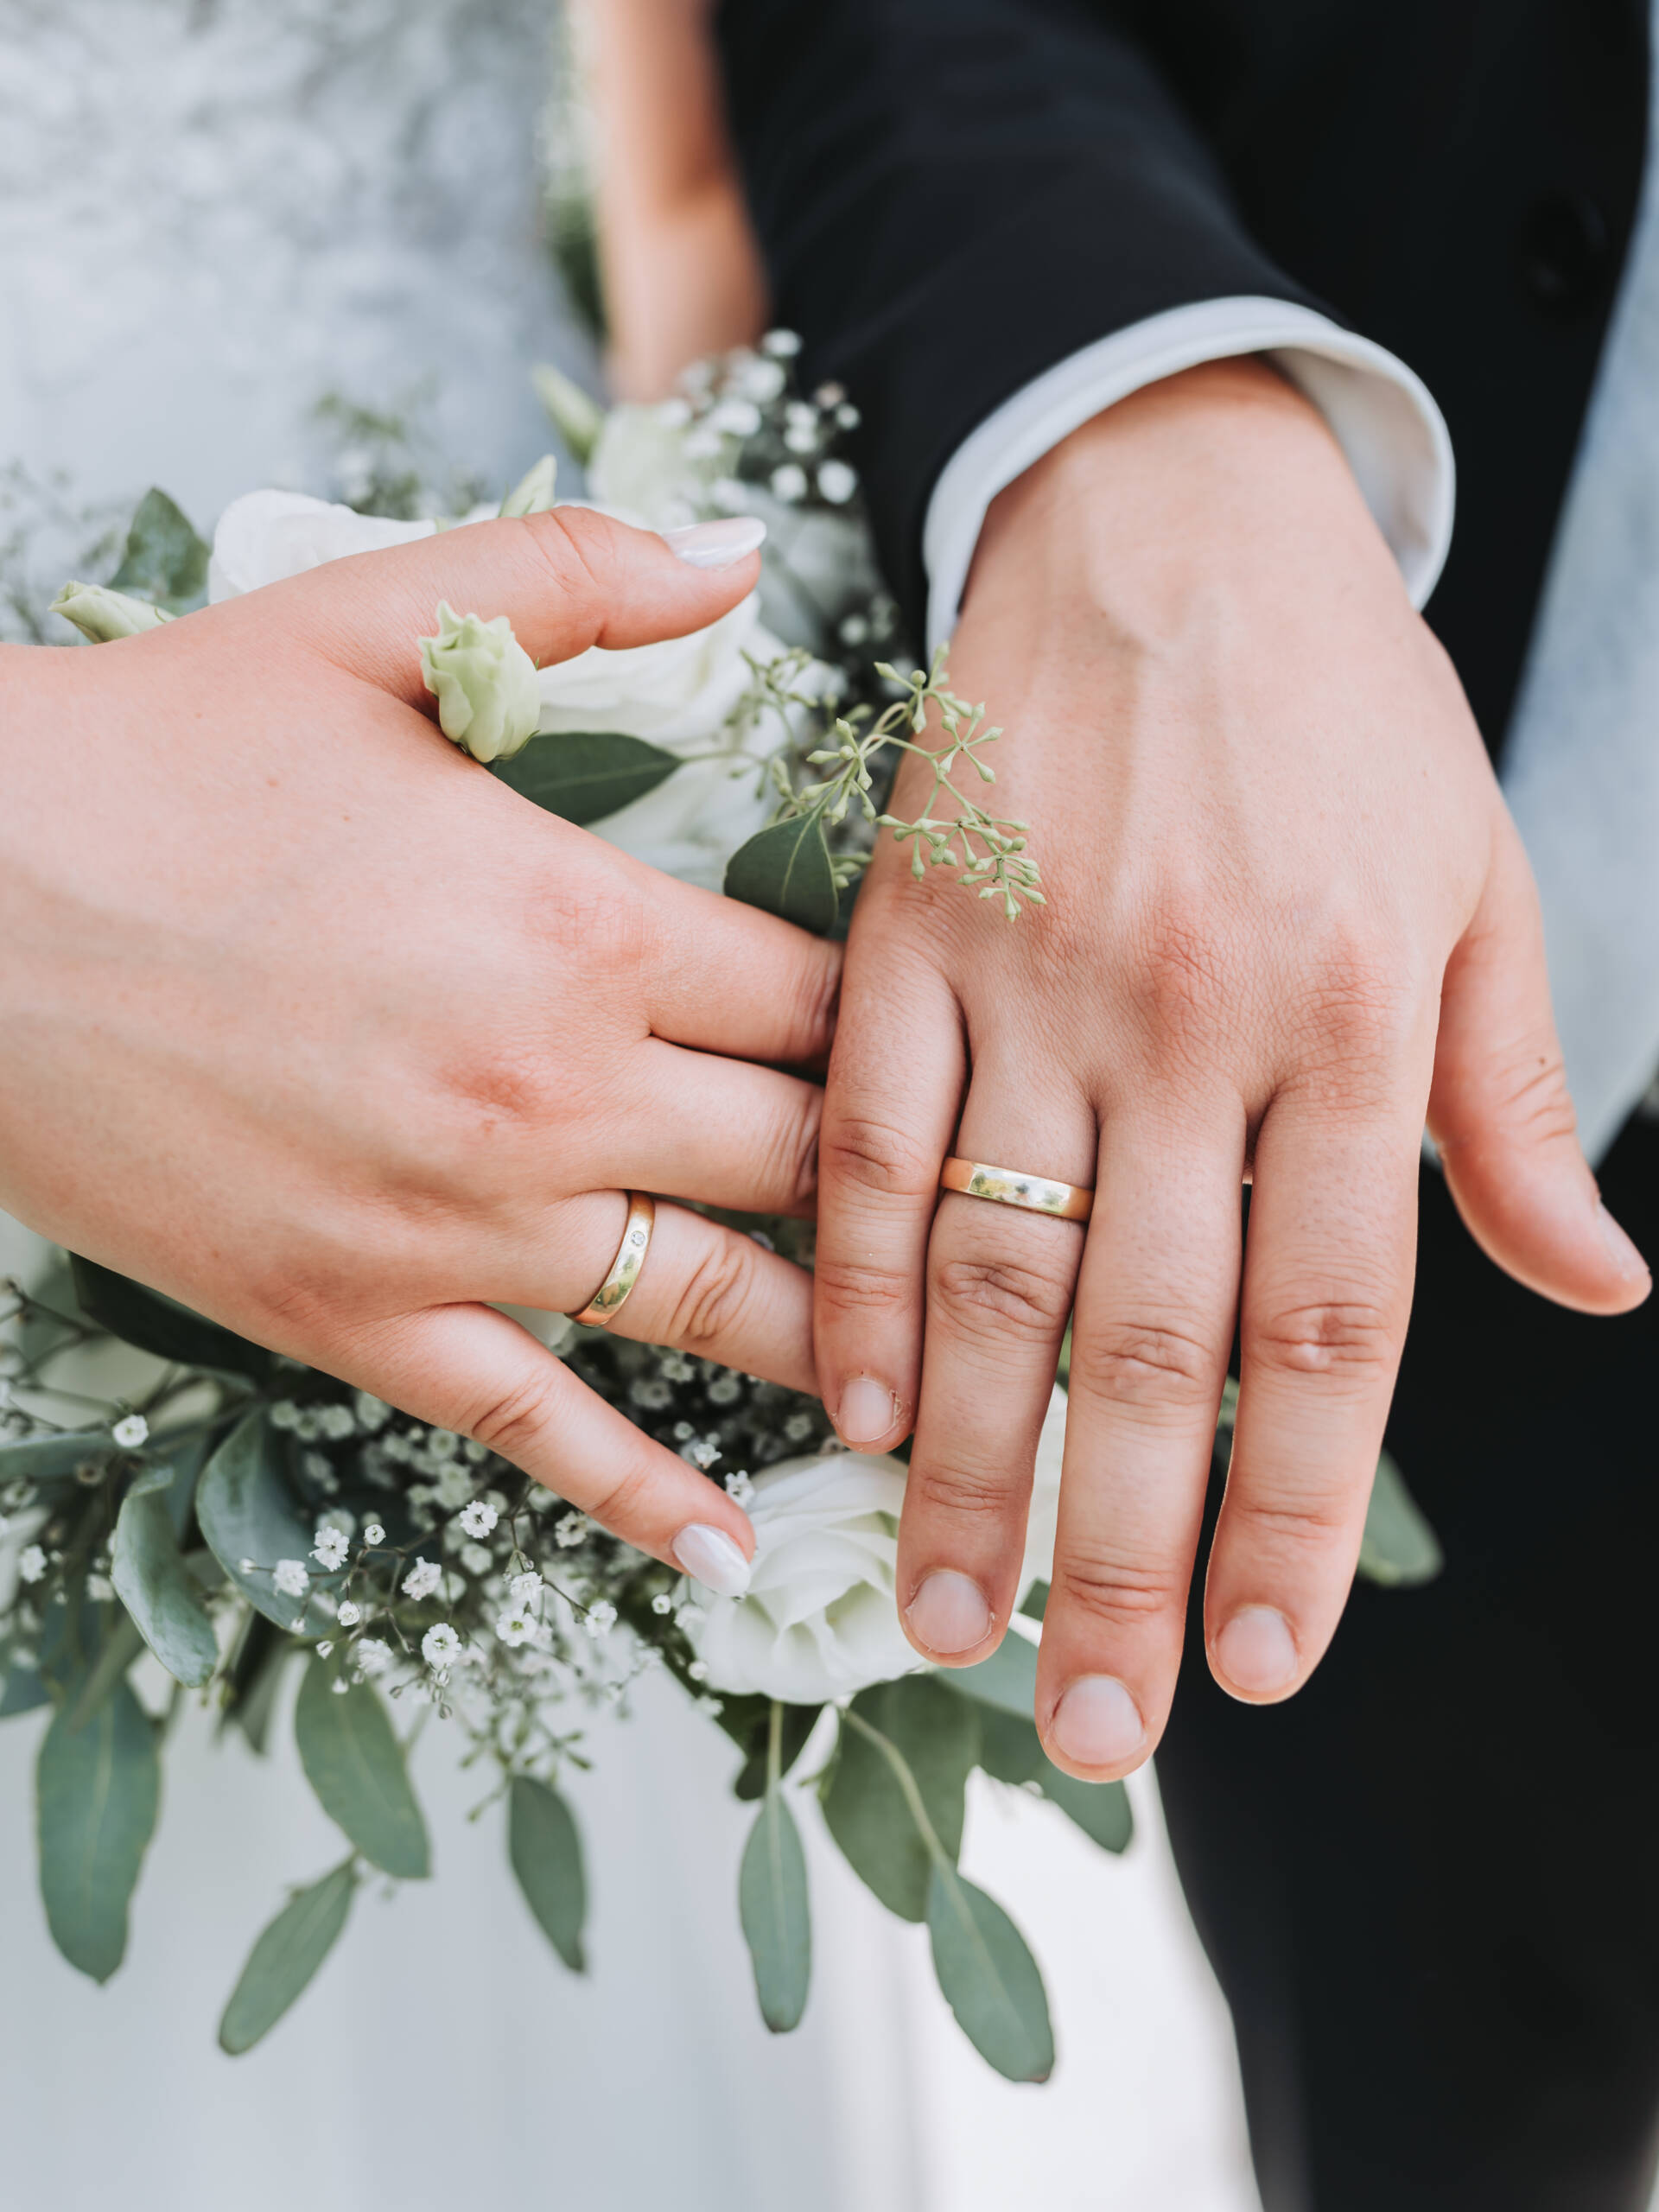 Ein frisch verheiratetes Brautpaar zeigt mit Stolz die Eheringe und hält diese über den Brautstrauß.